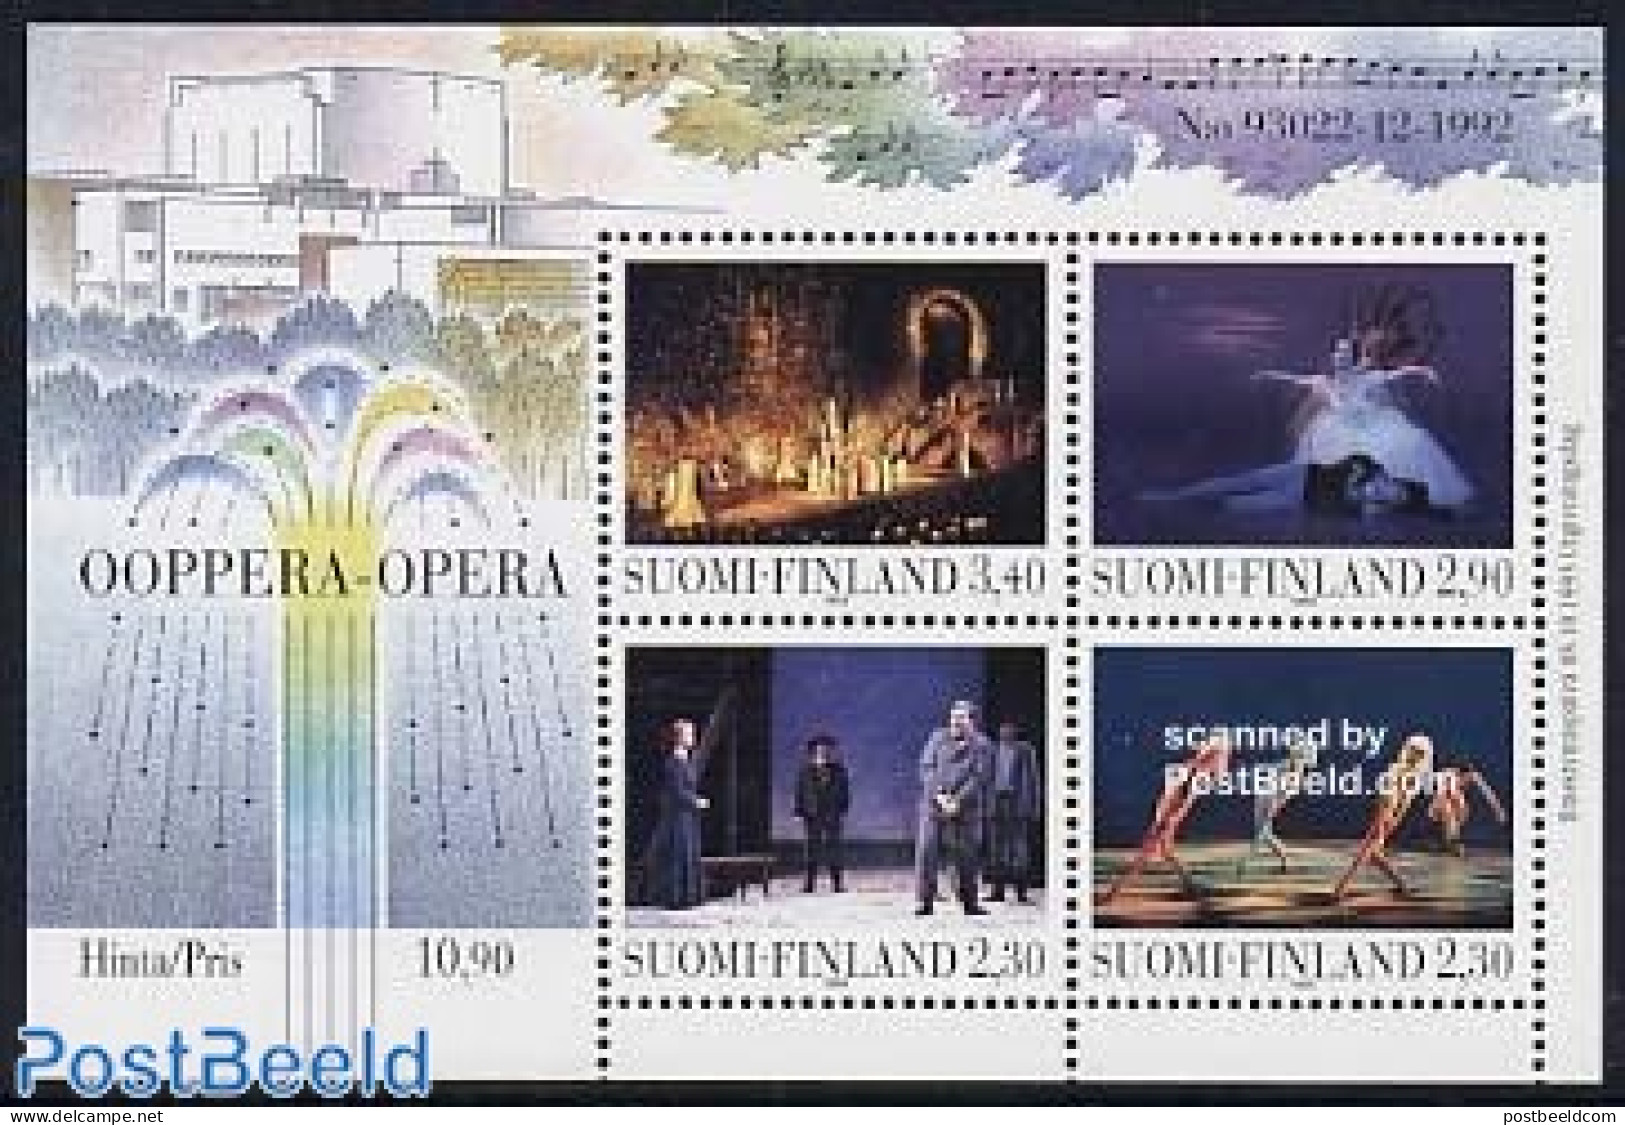 Finland 1993 Opera House S/s, Mint NH, Performance Art - Dance & Ballet - Music - Theatre - Neufs